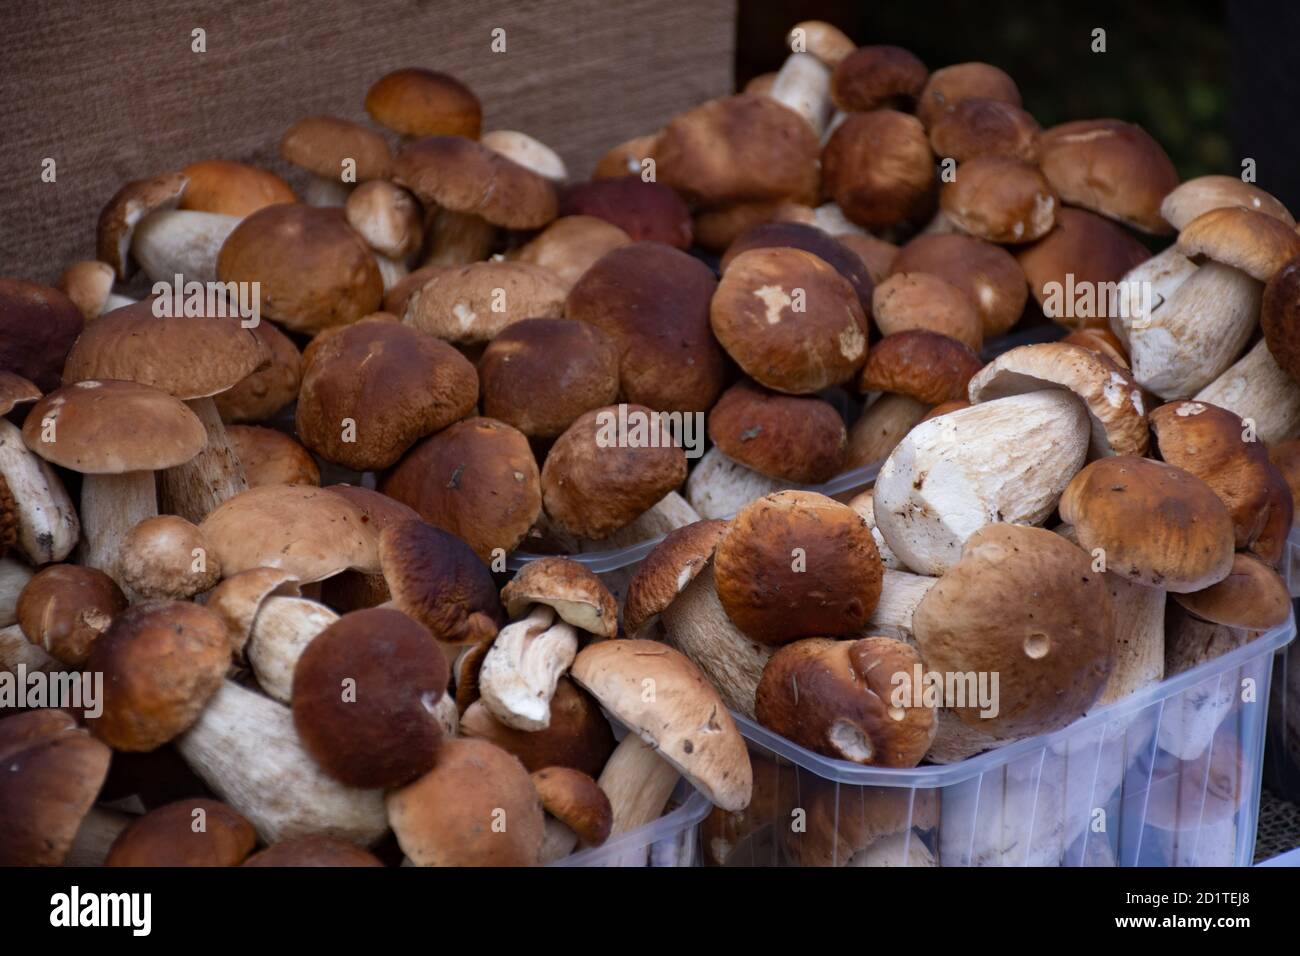 Funghi porcini boletus in vendita in piccoli cestini in un mercato alimentare di strada, vendemmia autunnale Foto Stock